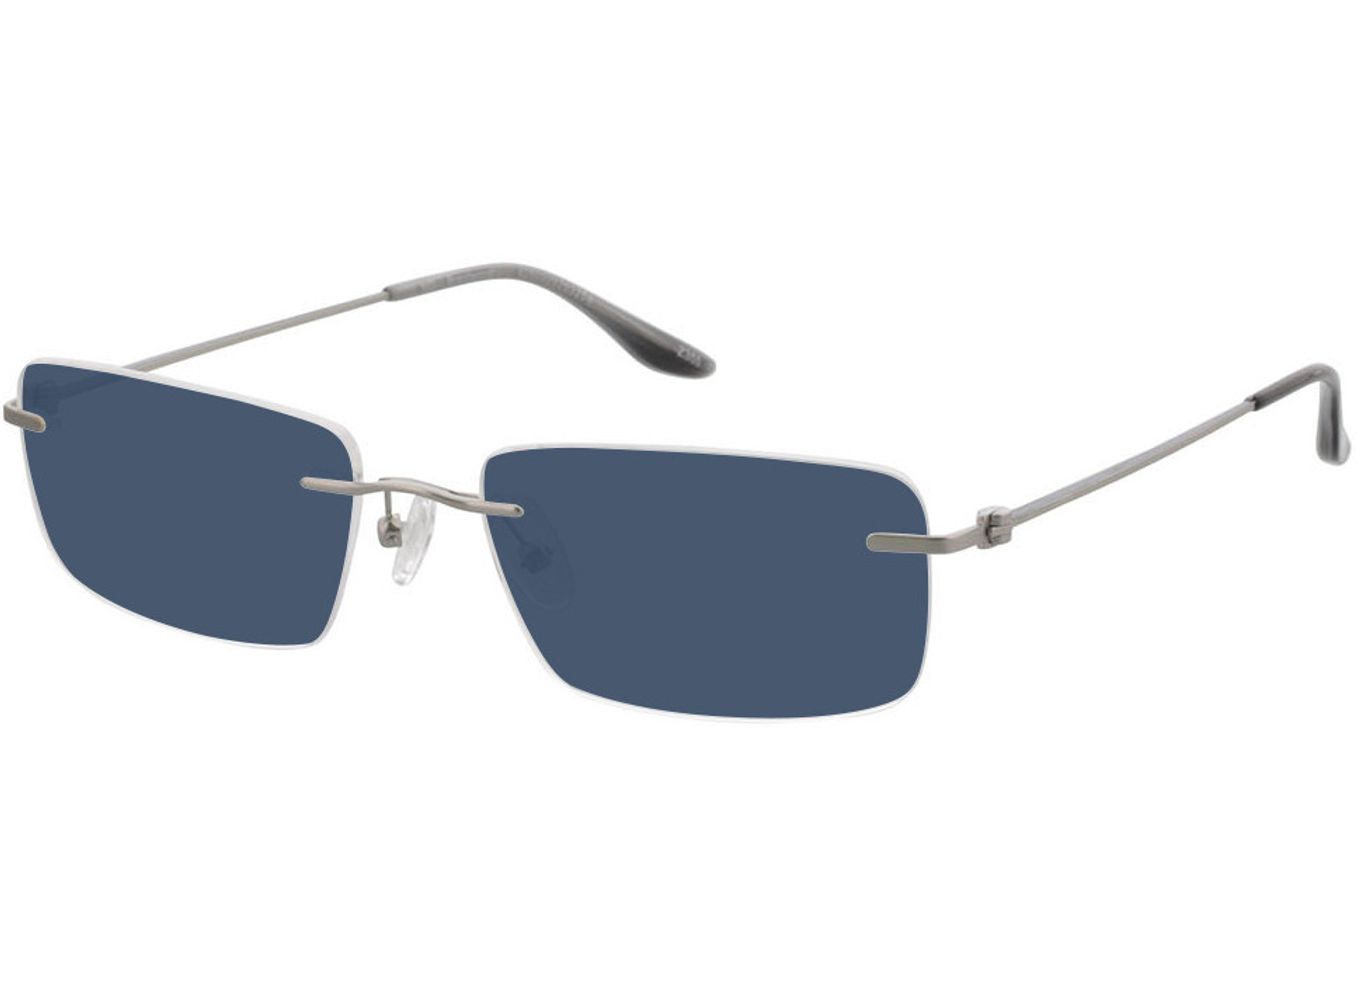 Brentwood - silber Sonnenbrille mit Sehstärke, Randlos, Rechteckig von Brille24 Collection